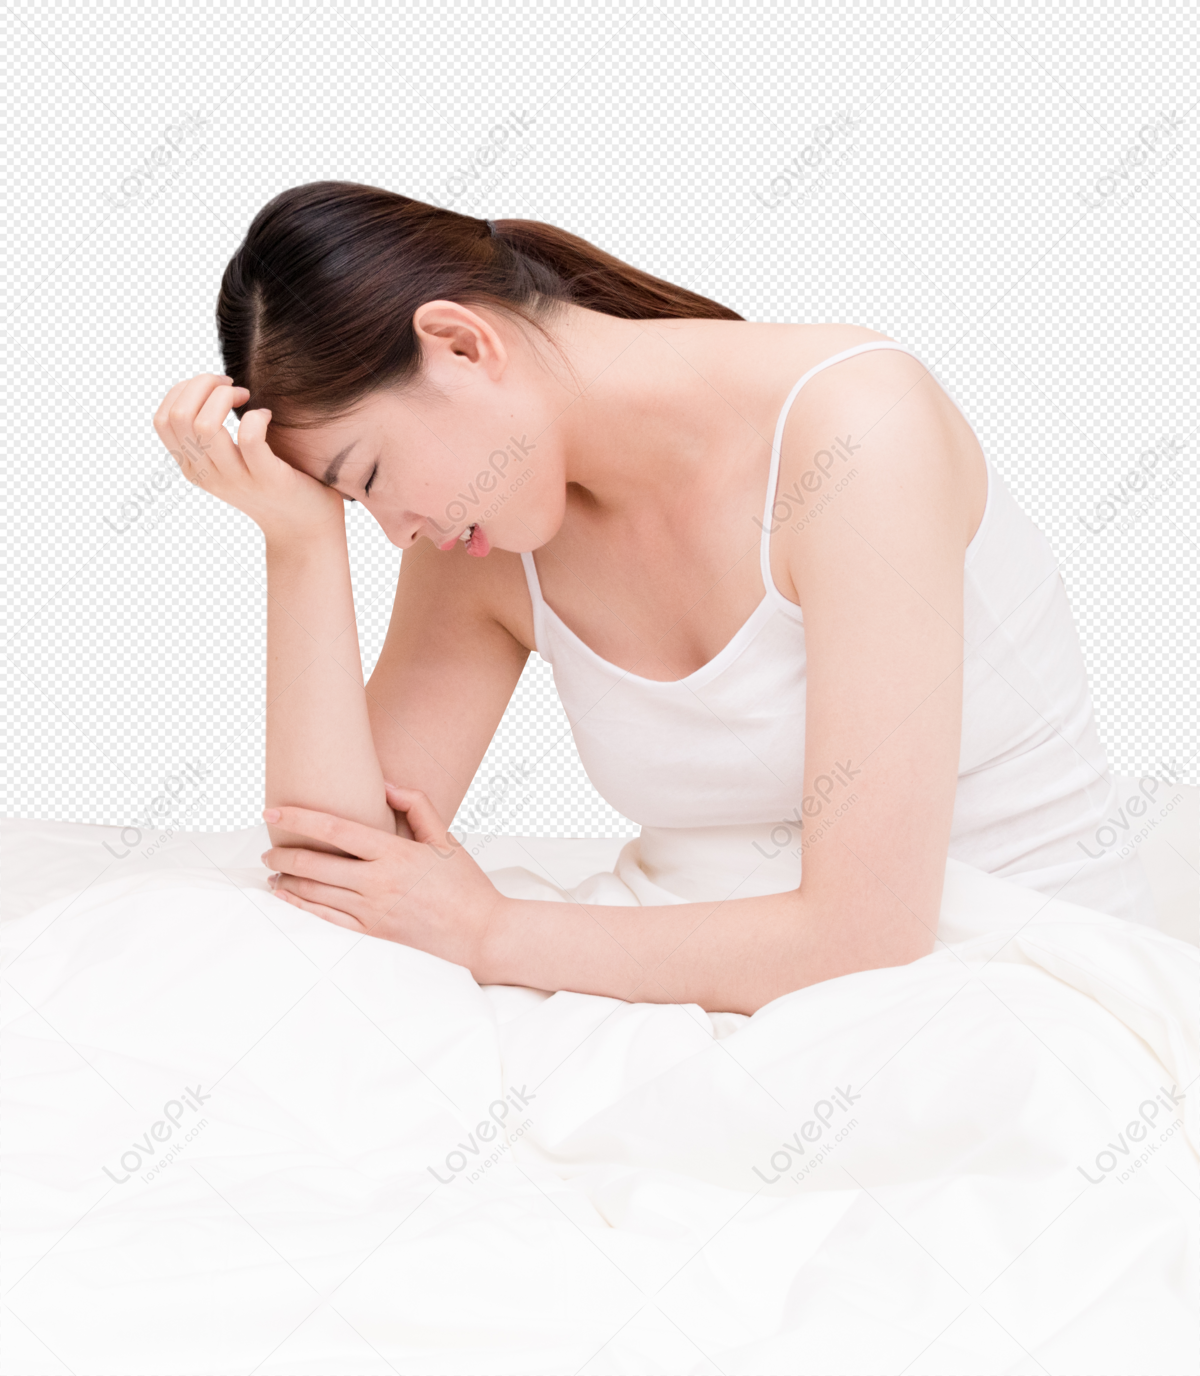 Hình ảnh Phụ Nữ Trẻ Bị Bệnh Mất Ngủ Và đau đầu Ngồi Trên Giường ...